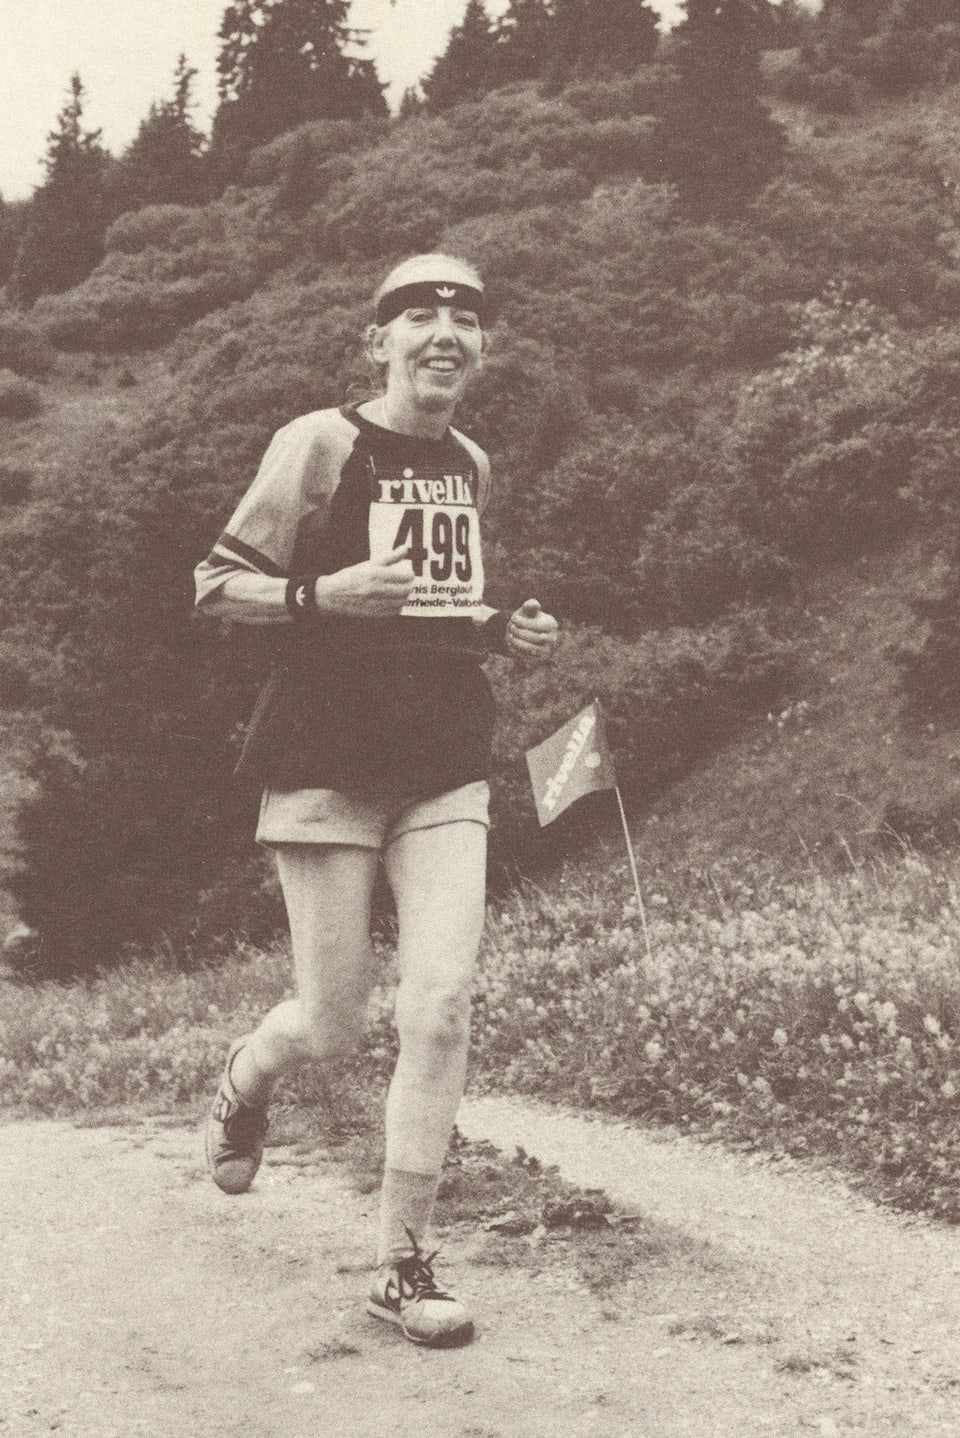 Frau mit Stirnband und kurzen Hosen auf Feldweg joggend.